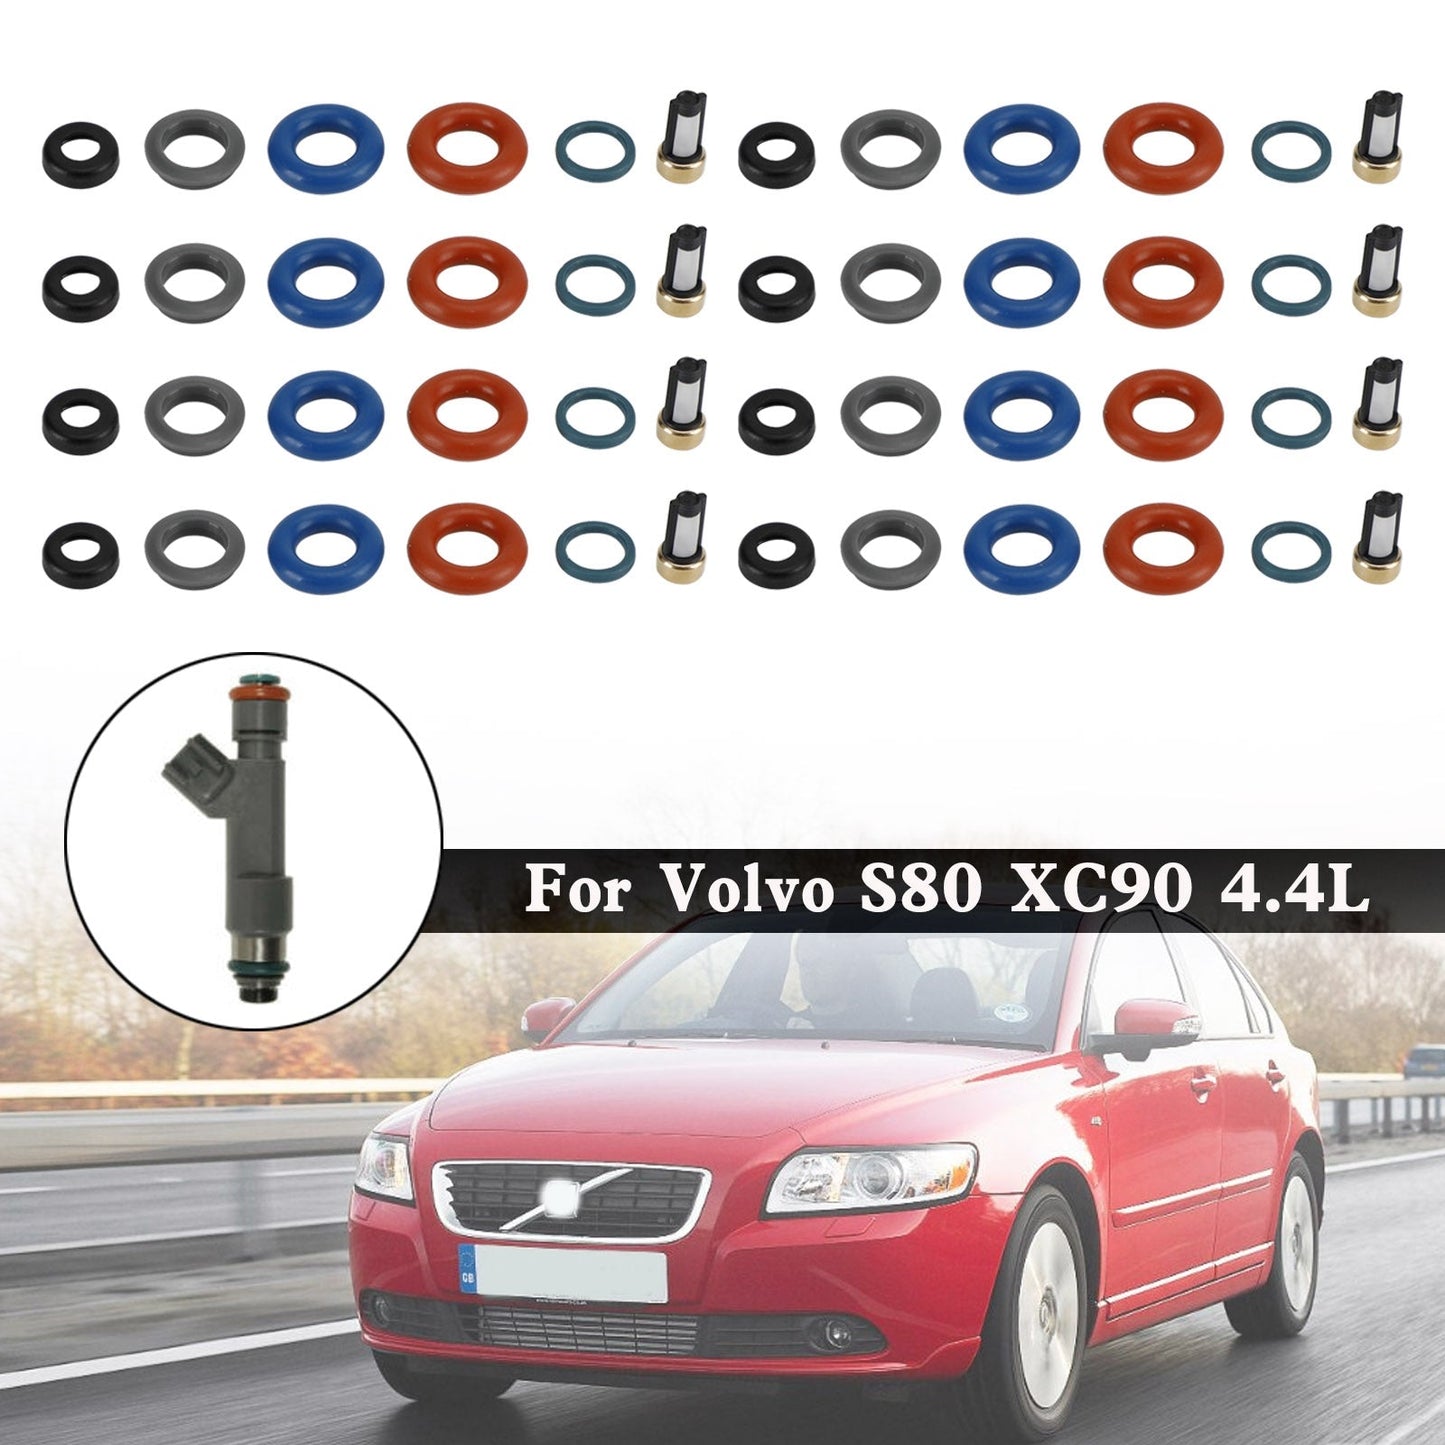 Volvo S80 XC90 4.4L 8PCS Fuel Injectors Repair Seal Kit Filter Cap FJ1073 85212247 1550589 86536080 024078918 55559397 1581552